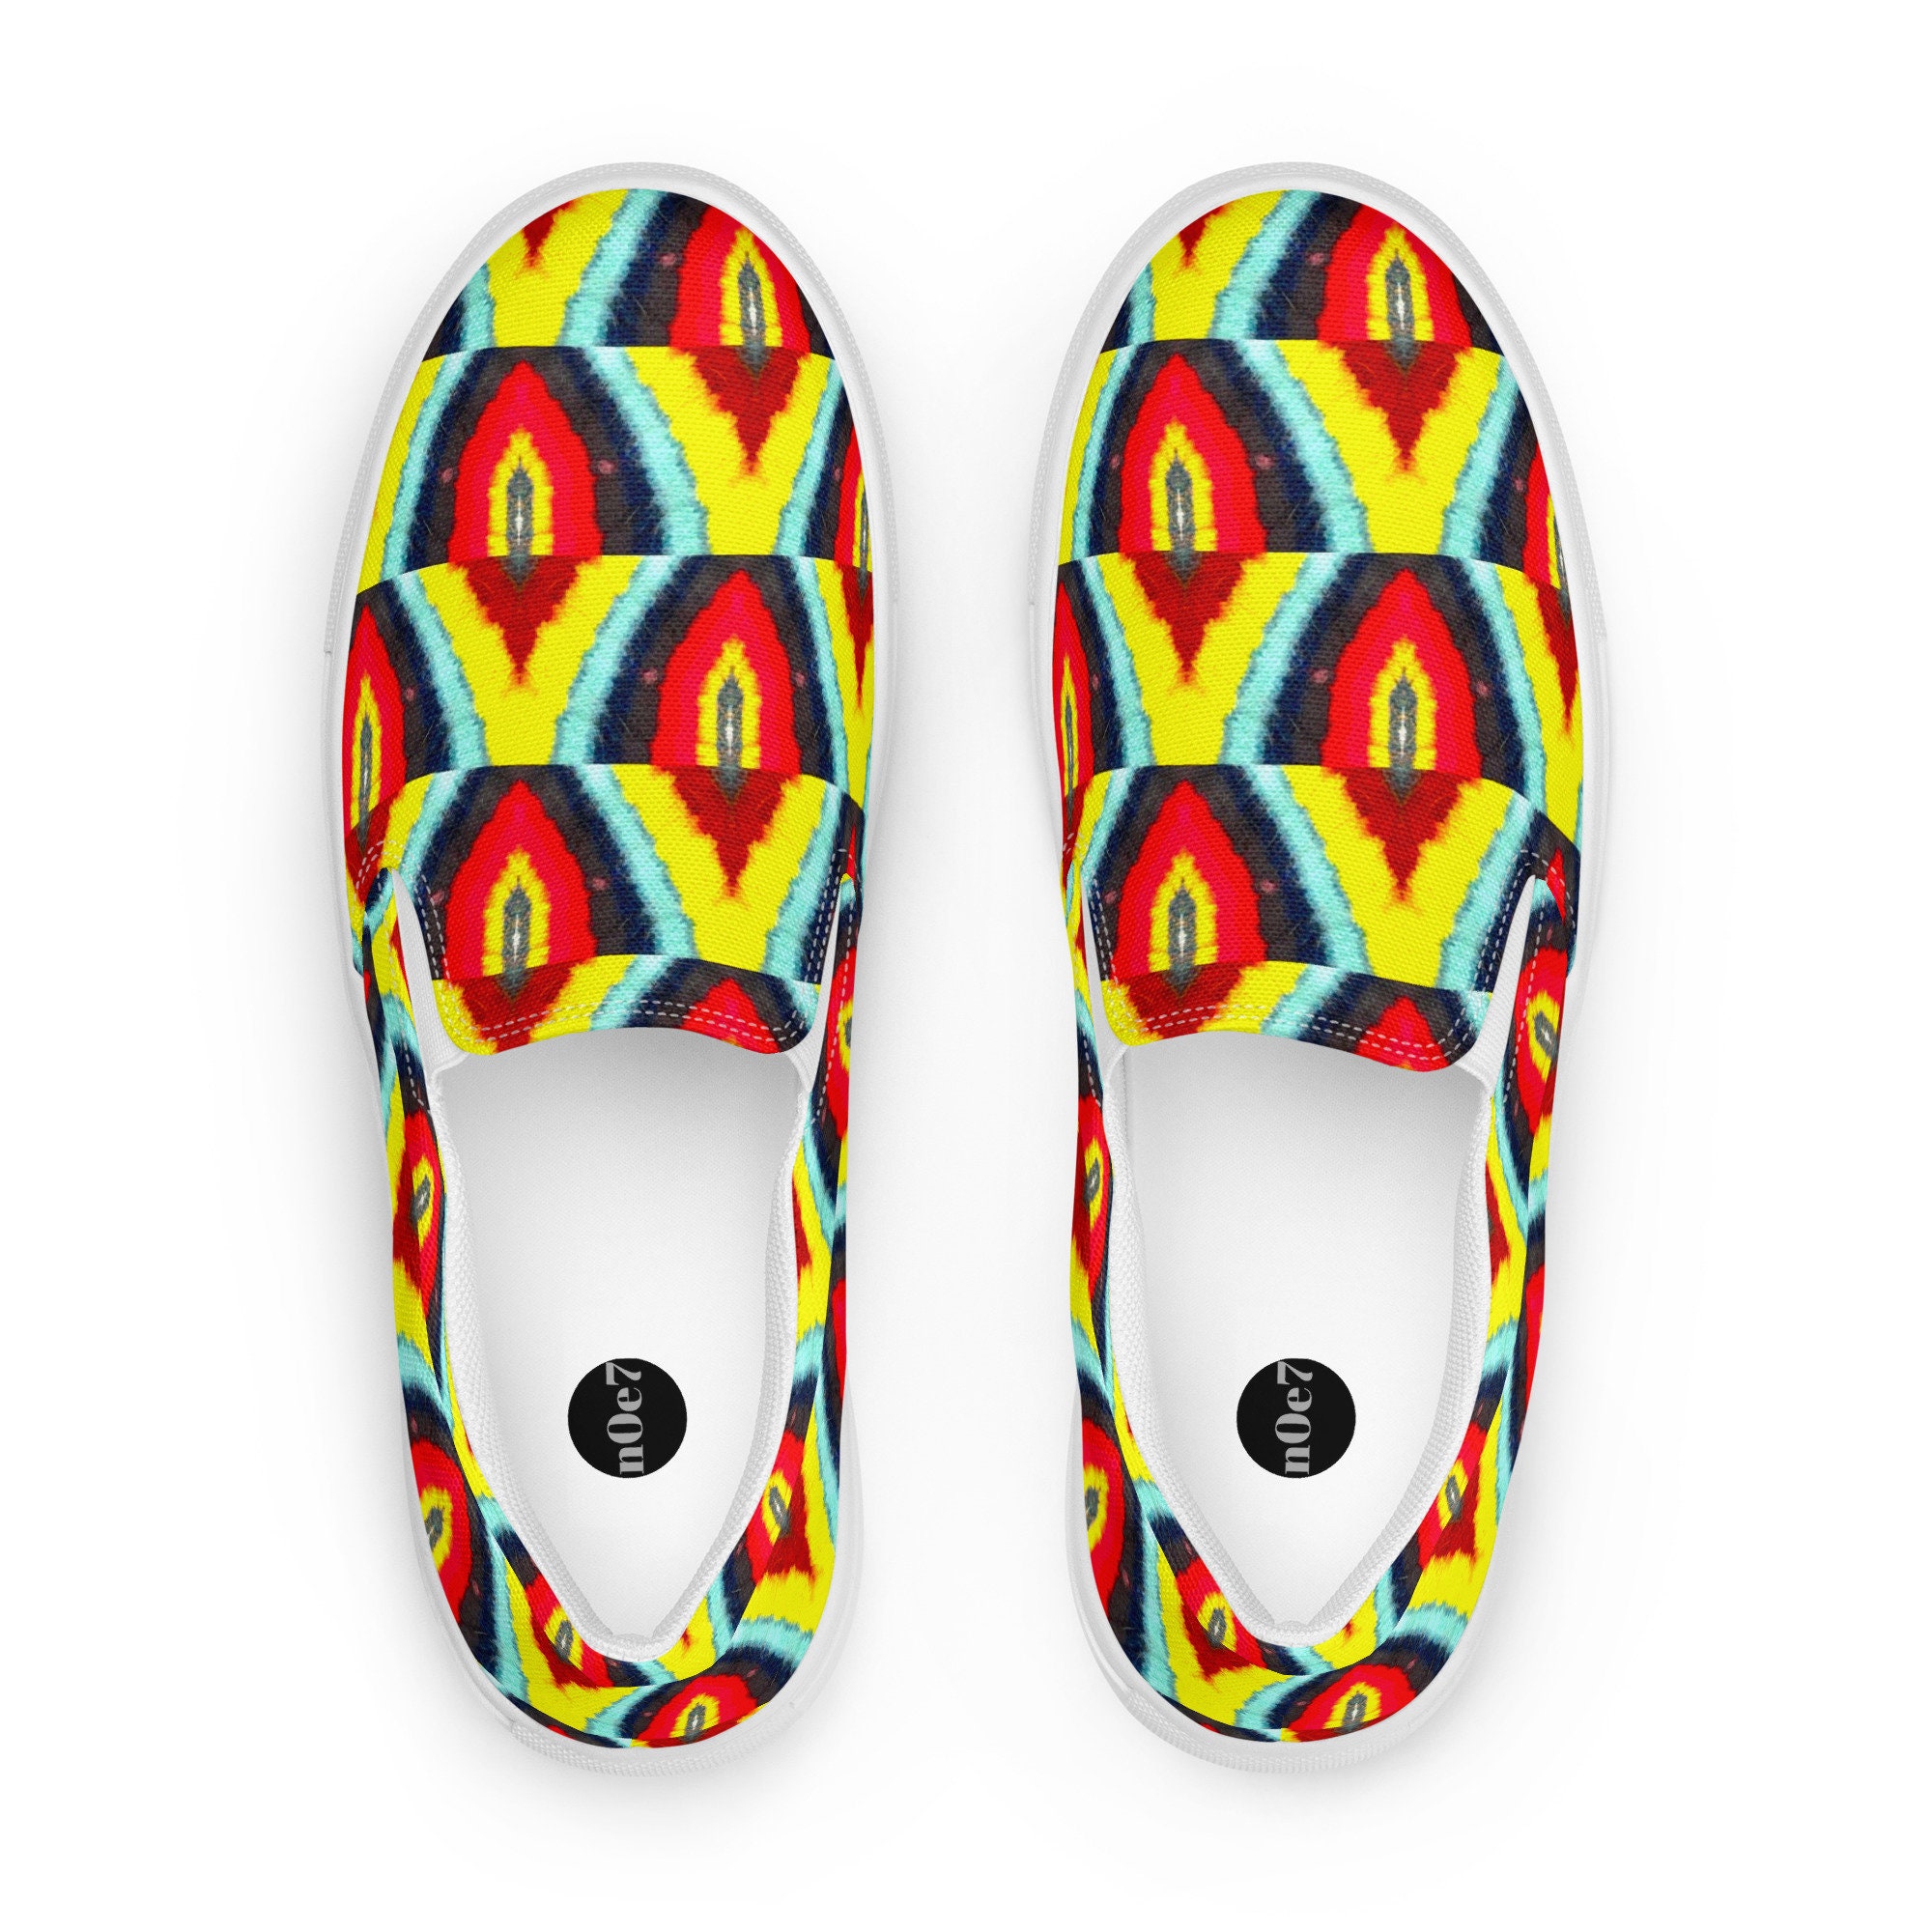 Heren slip-on canvas vans stijl loafers met grafische patroon print in levendige kleuren geweldige cadeaus voor hem Schoenen Herenschoenen Loafers & Instappers indoor outdoor schoenen mannen uniek 